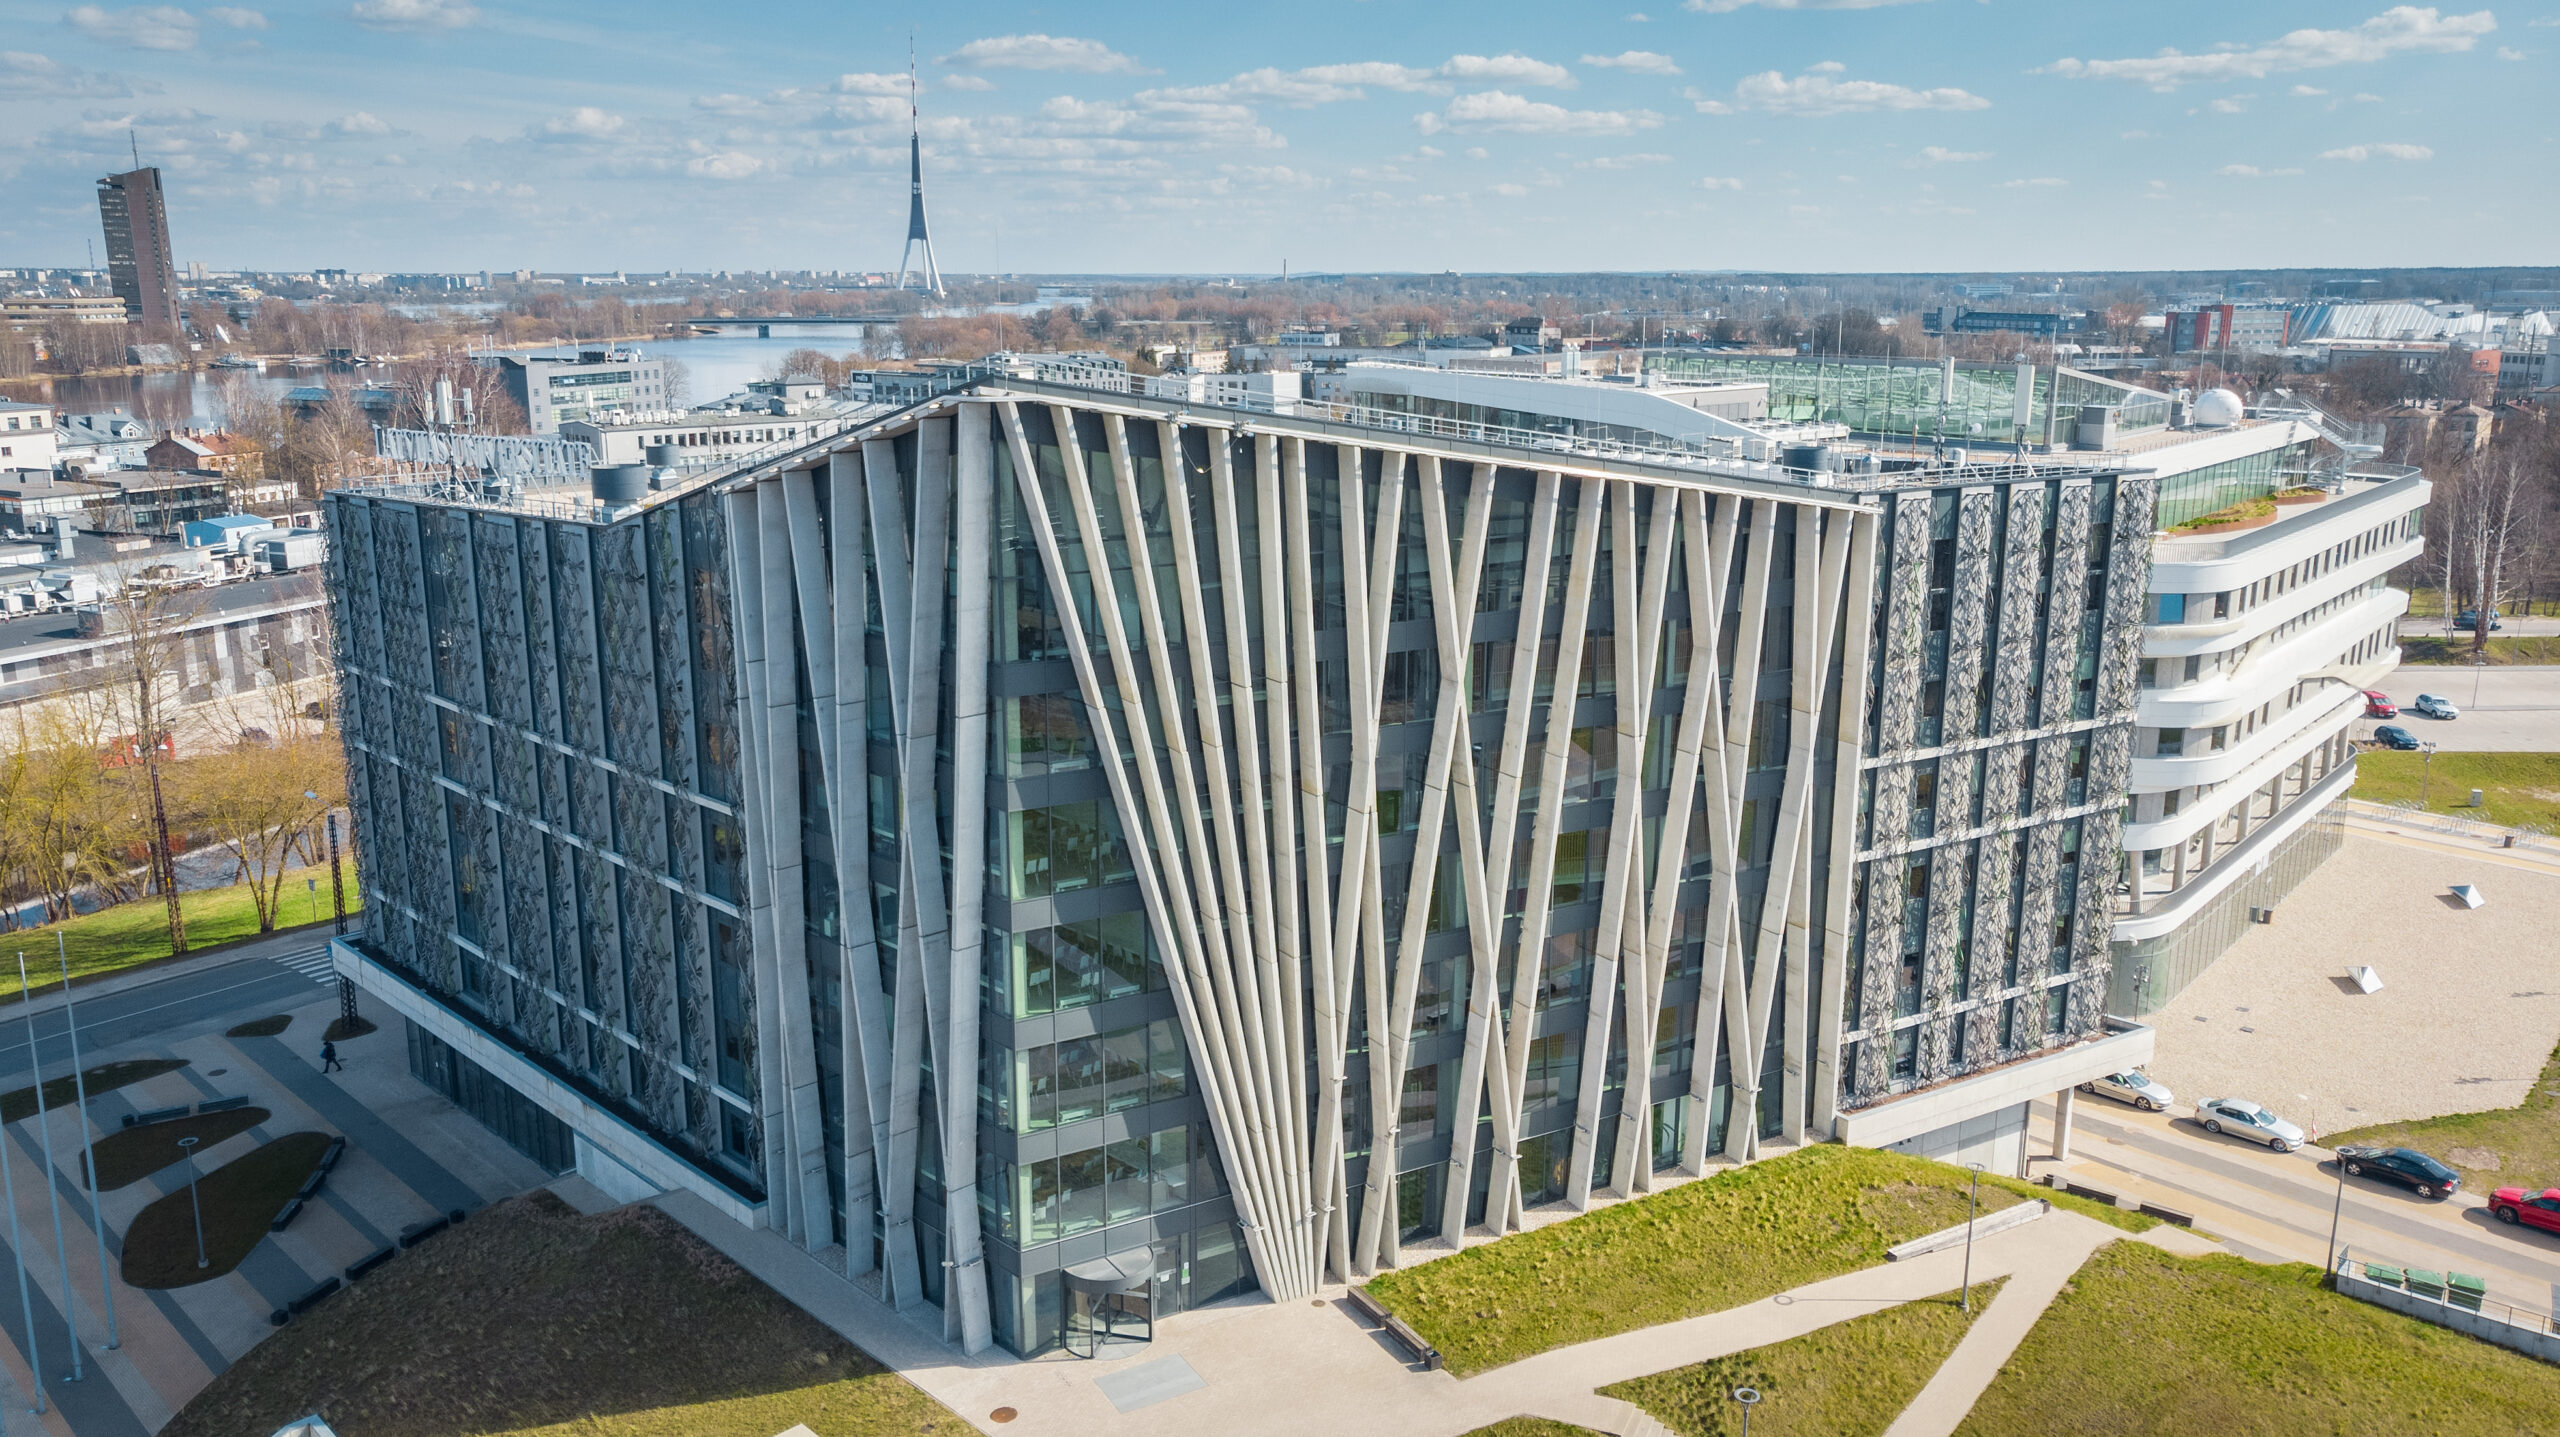 University of Latvia Find and Study 10 scaled - University of Latvia